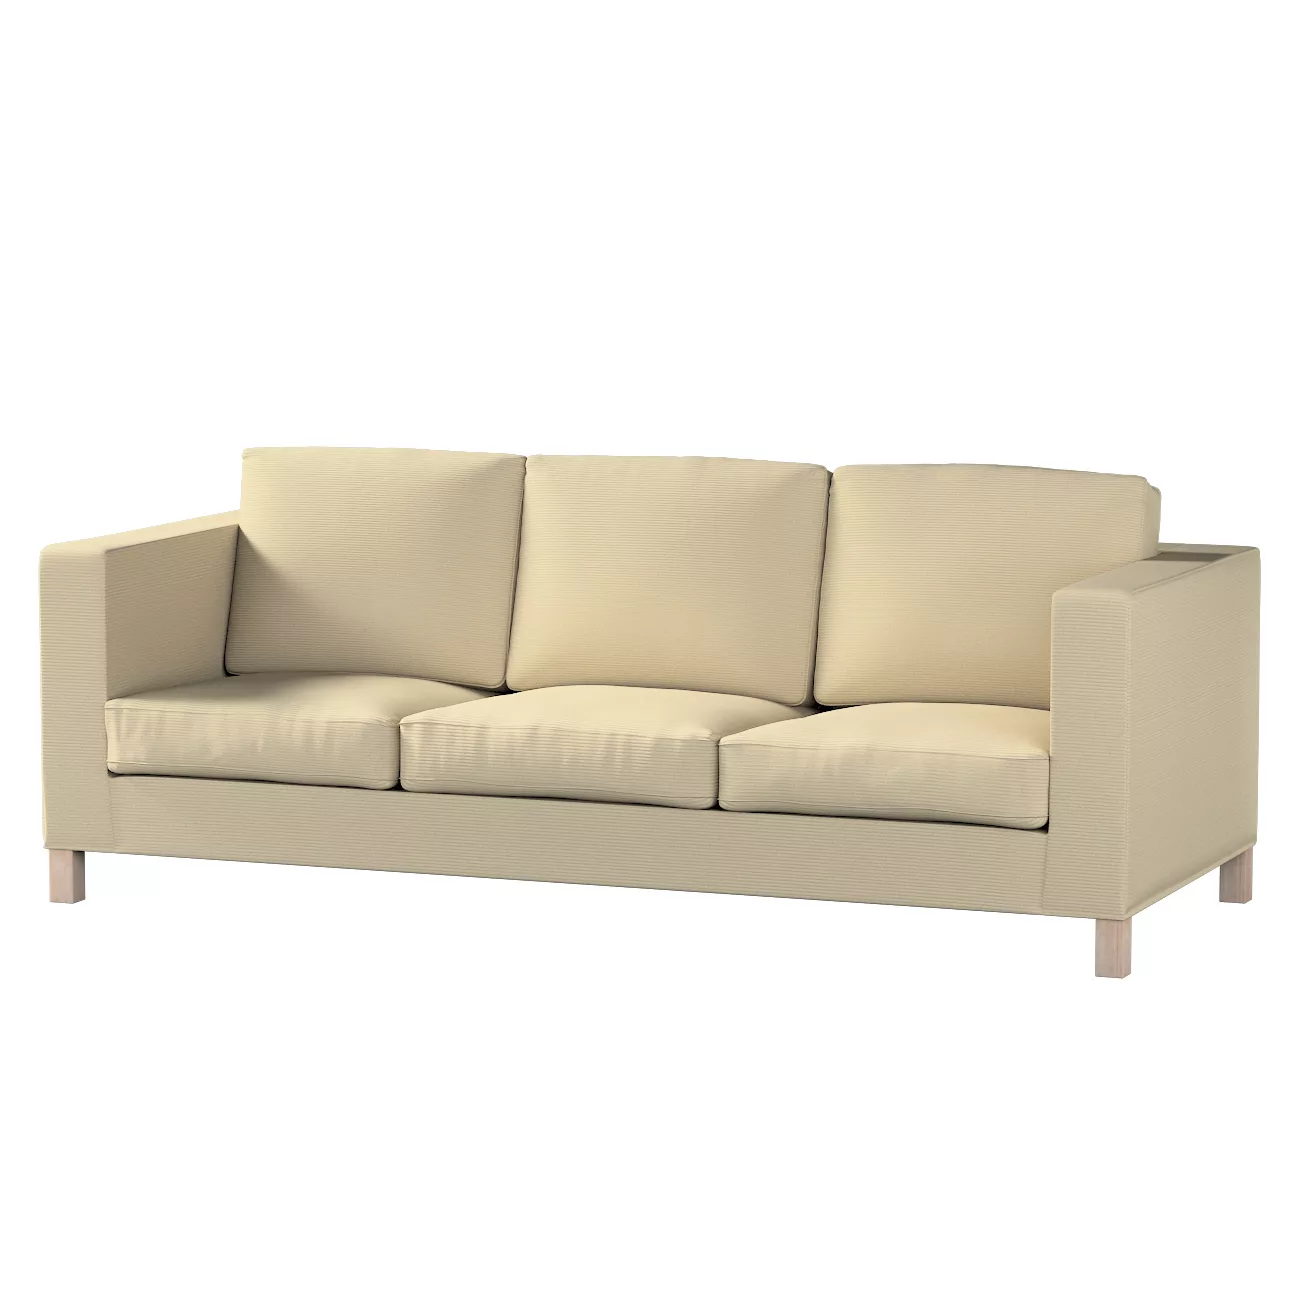 Bezug für Karlanda 3-Sitzer Sofa nicht ausklappbar, kurz, beige, Bezug für günstig online kaufen